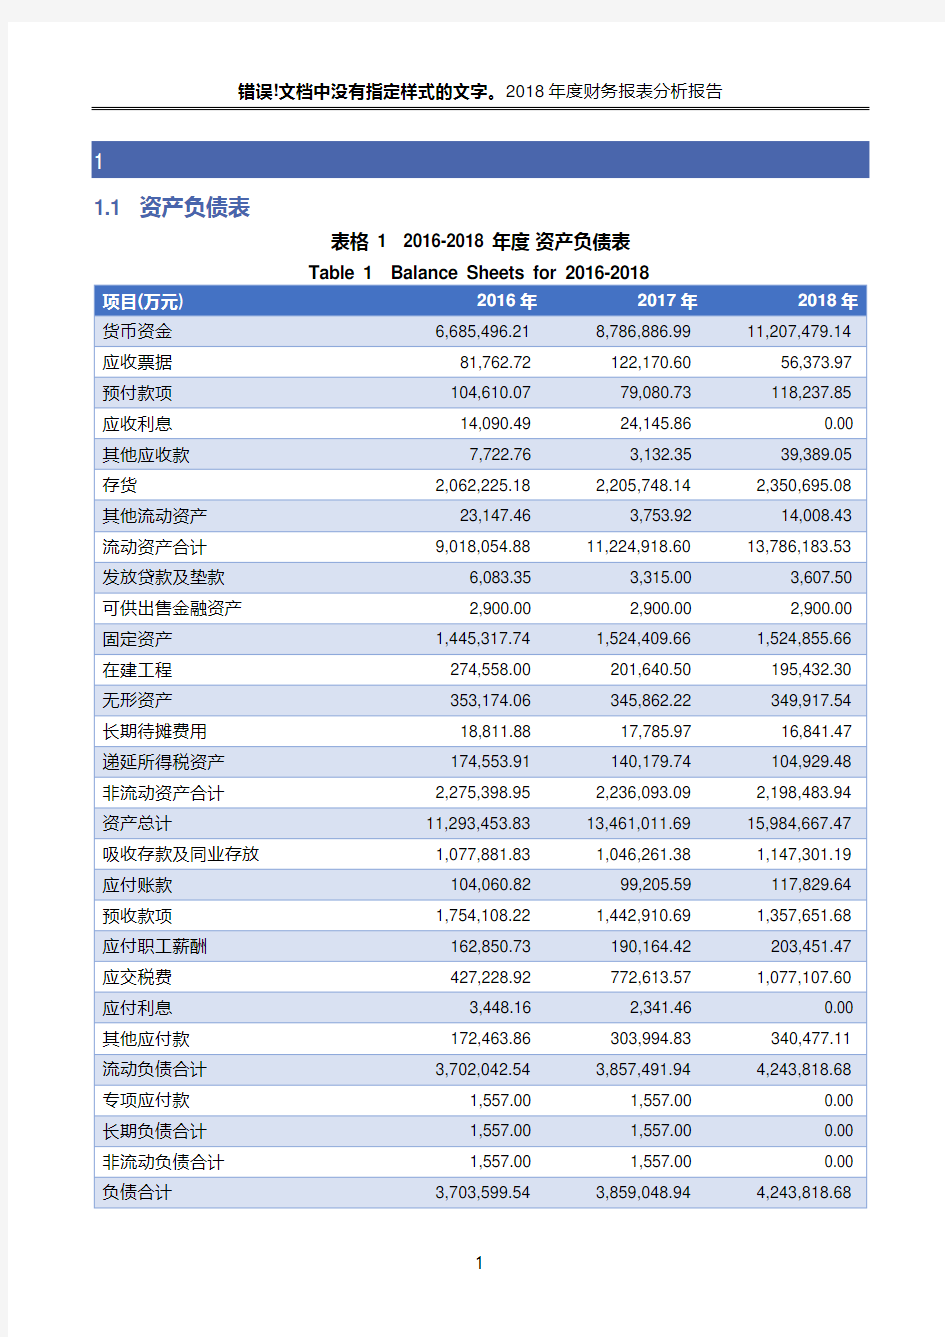 贵州茅台酒股份有限公司2018年度财务报表分析报告